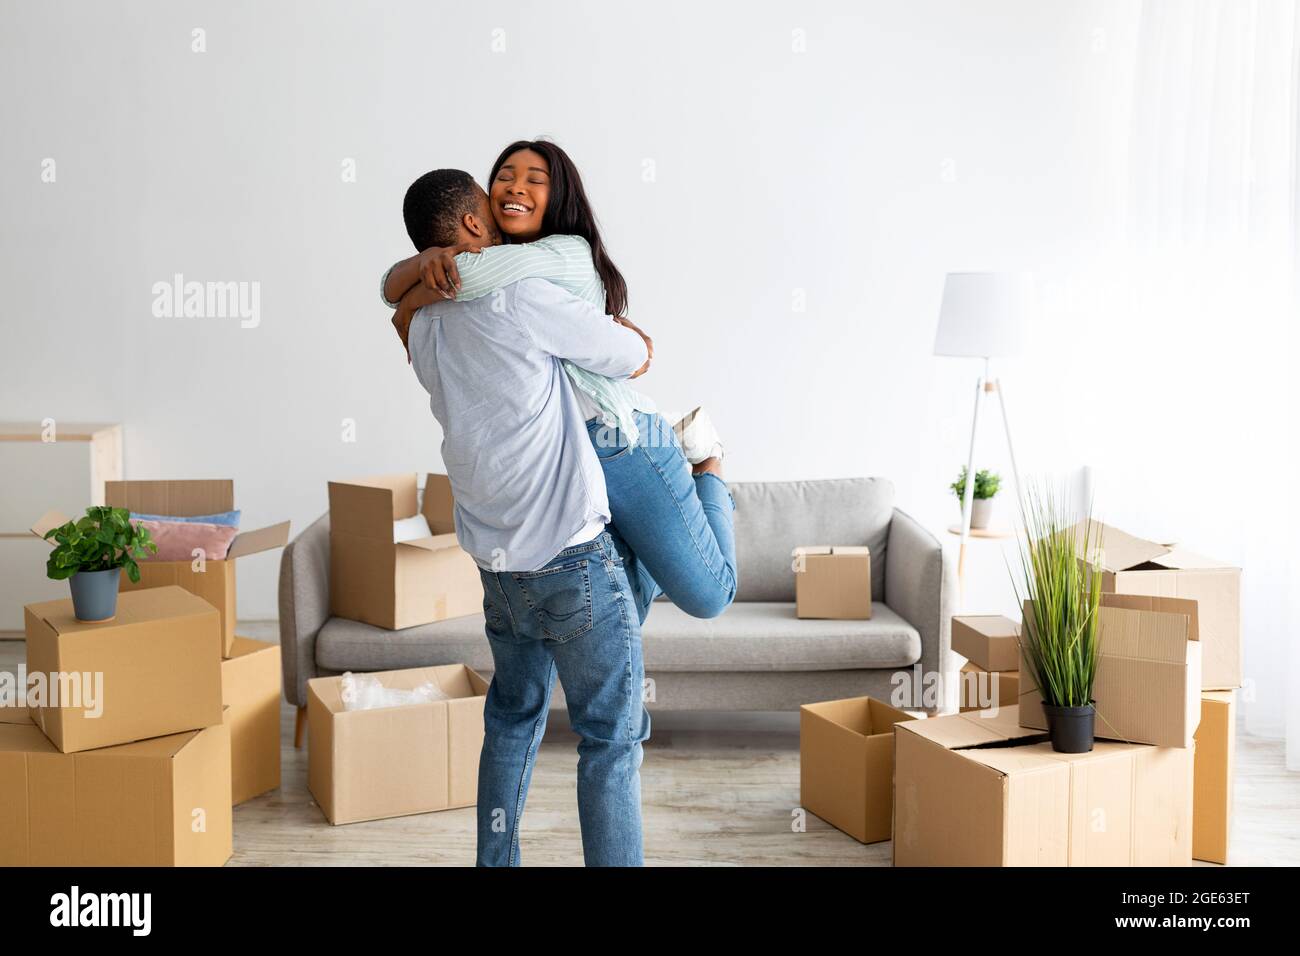 Proprietari di casa. Felice uomo afroamericano abbracciare e sollevare moglie, festeggiando giorno in movimento nel loro nuovo appartamento, spazio libero. Giovani inquilini neri feeli Foto Stock